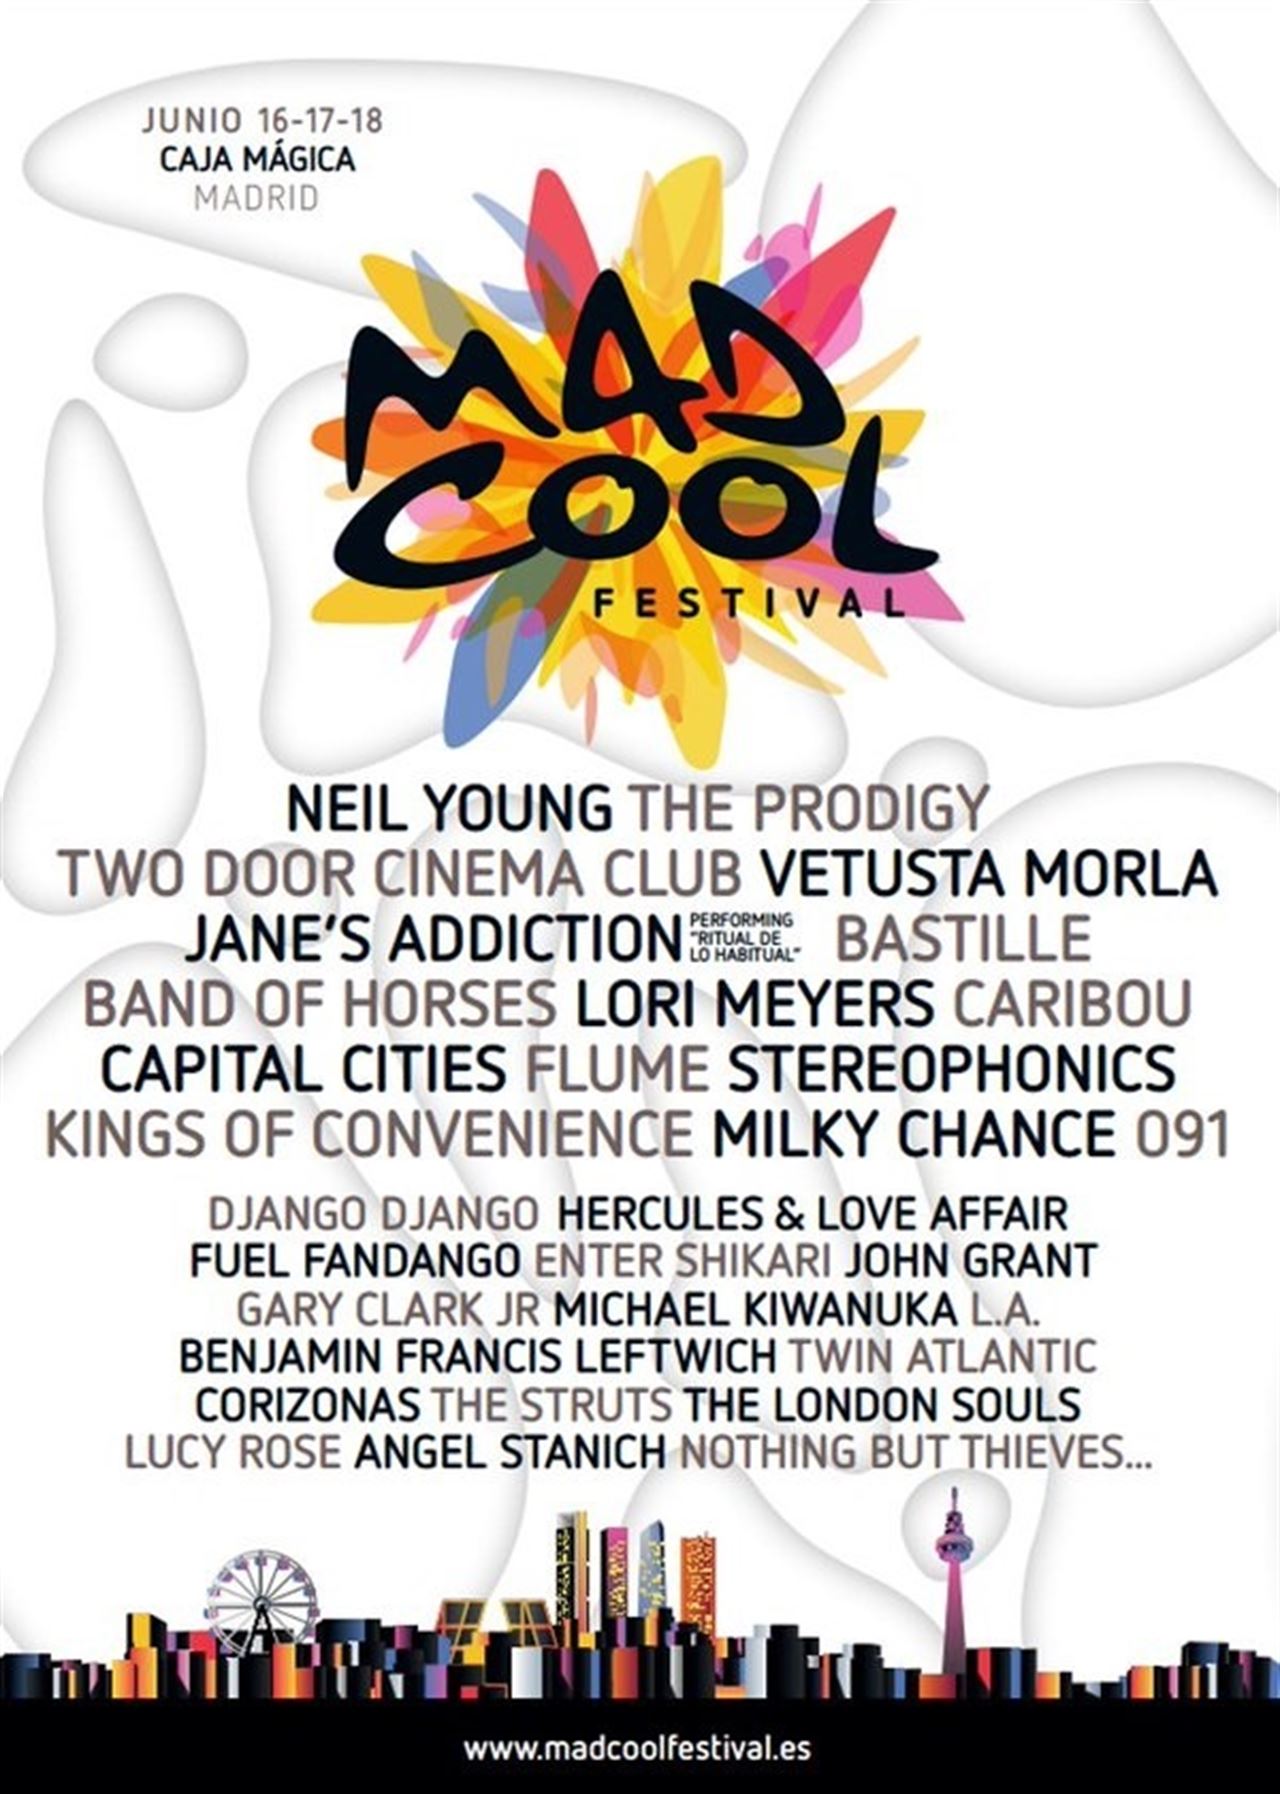 Cartel del Mad Cool Festival de Madrid, del 16 al 18 de junio en Madrid.